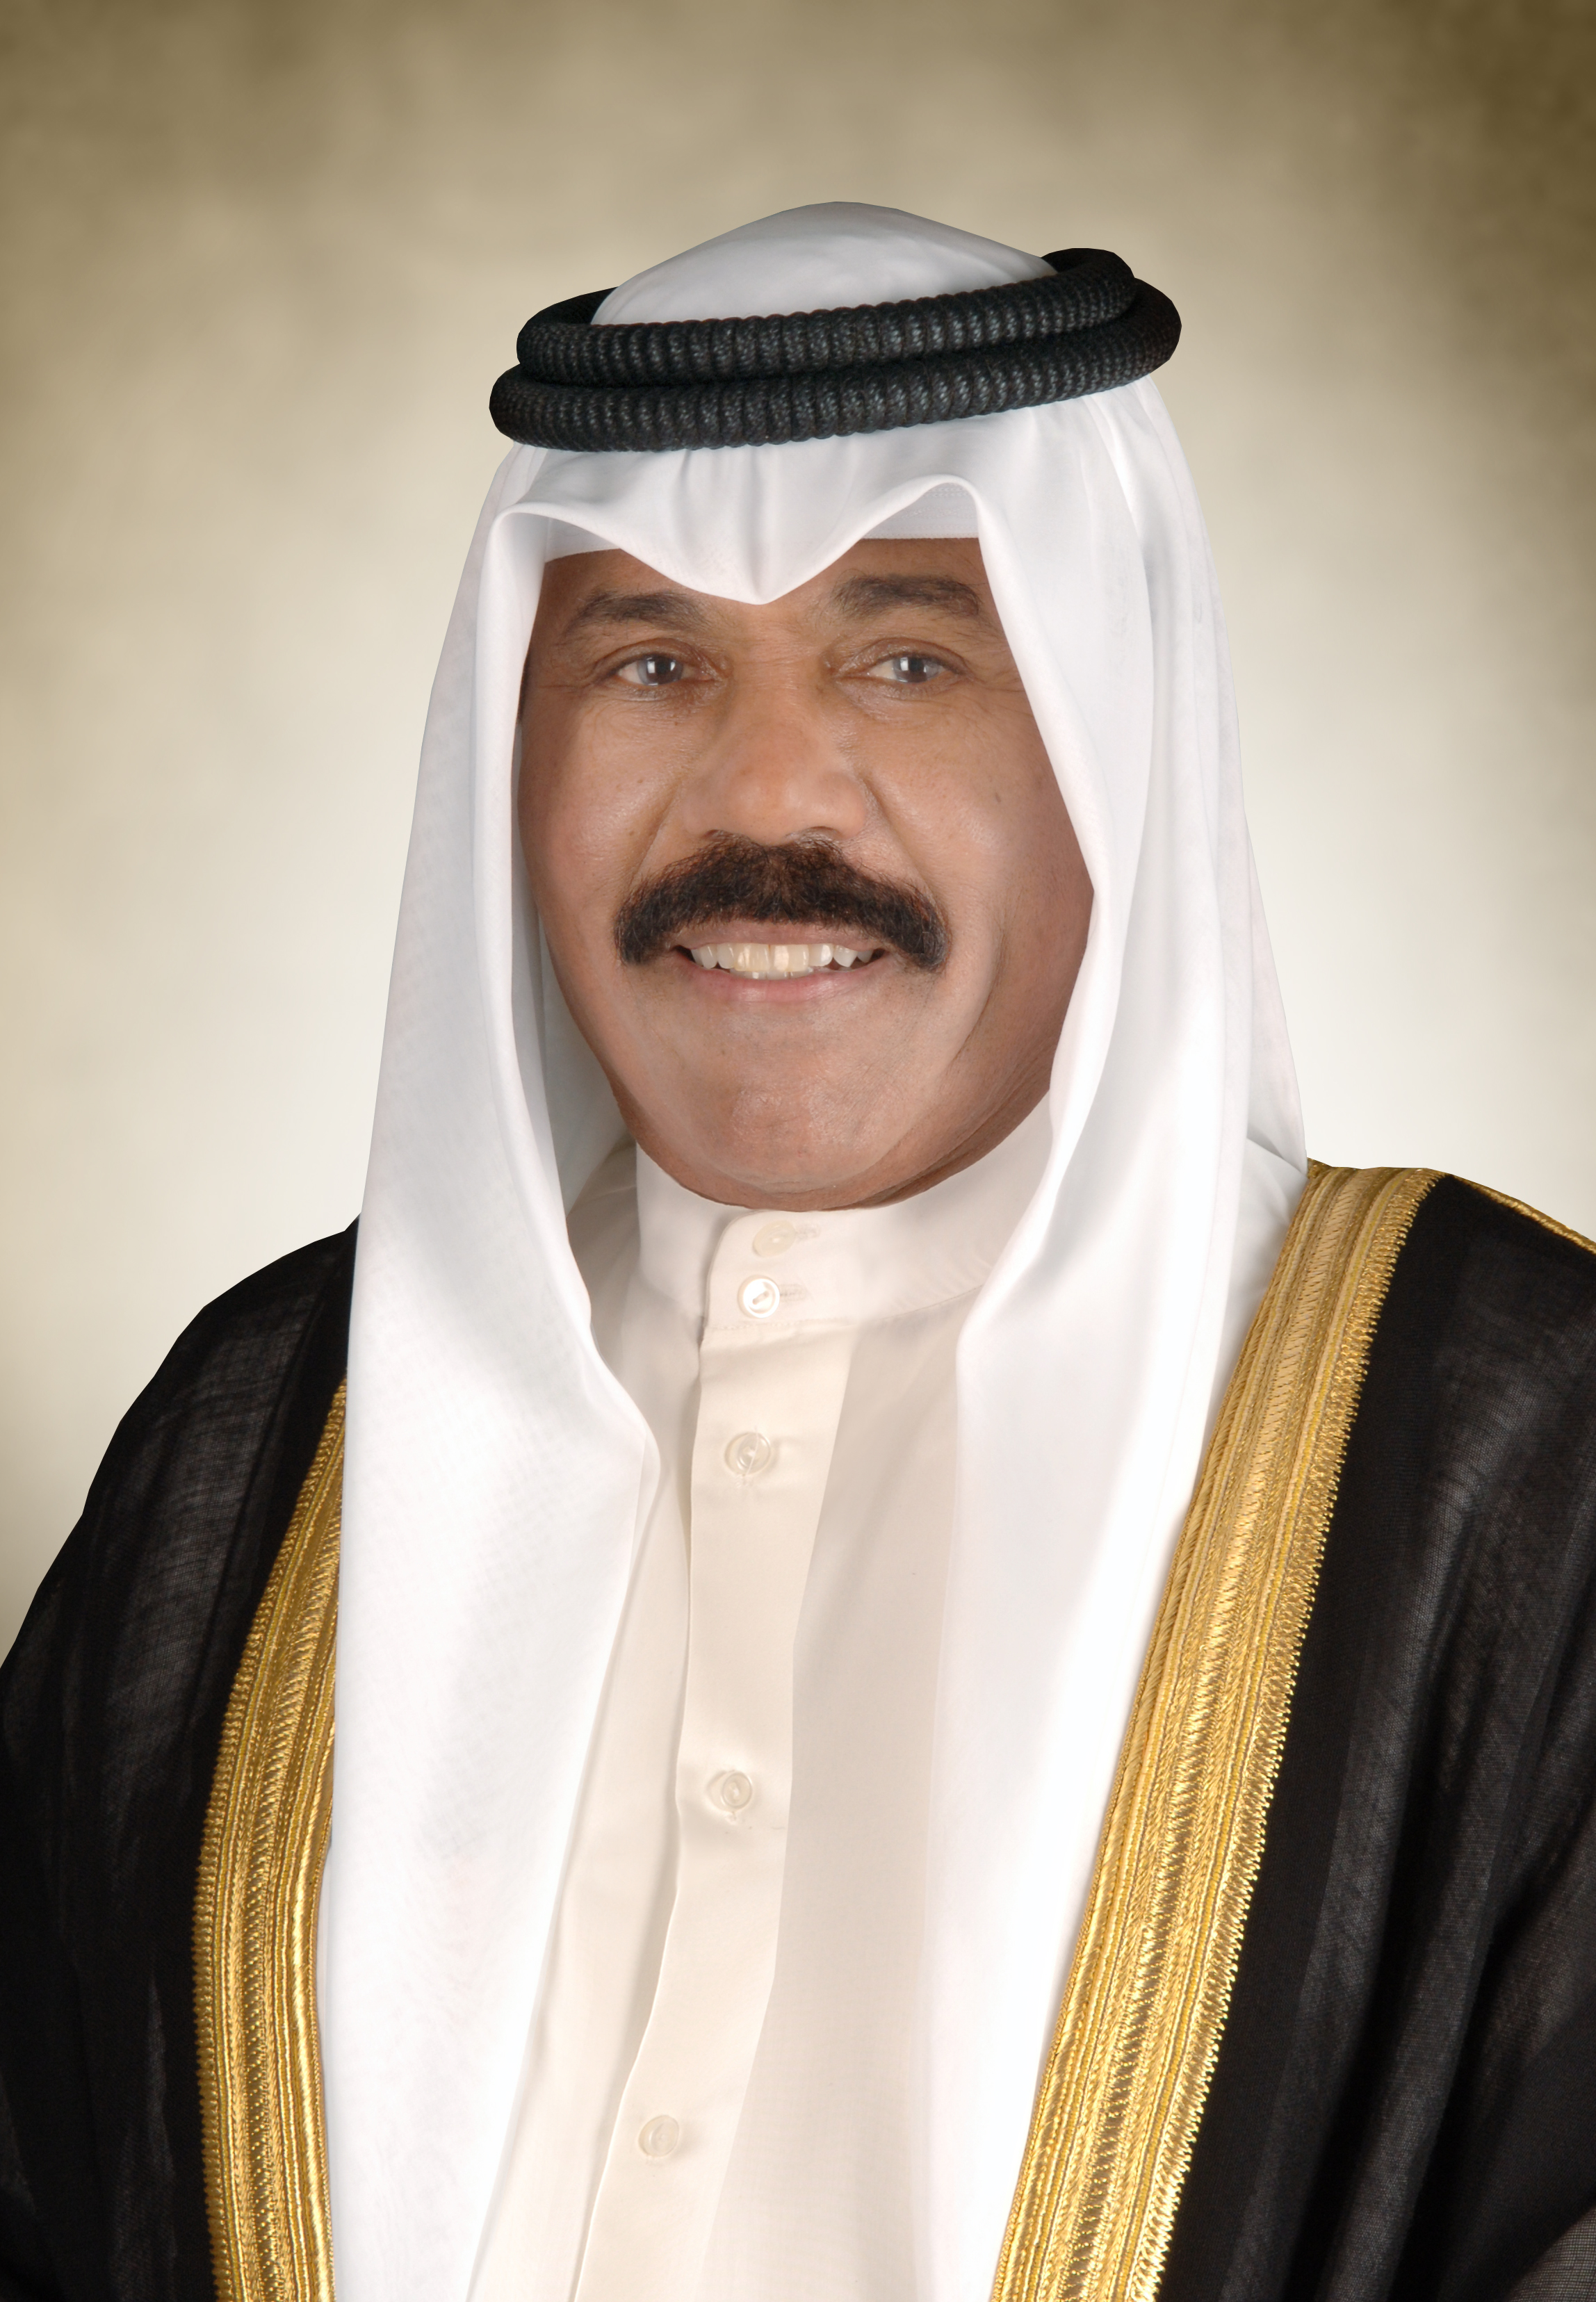  سمو أمير البلاد يتلقى اتصالا هاتفيا من أمير قطر للتهنئة بشهر رمضان